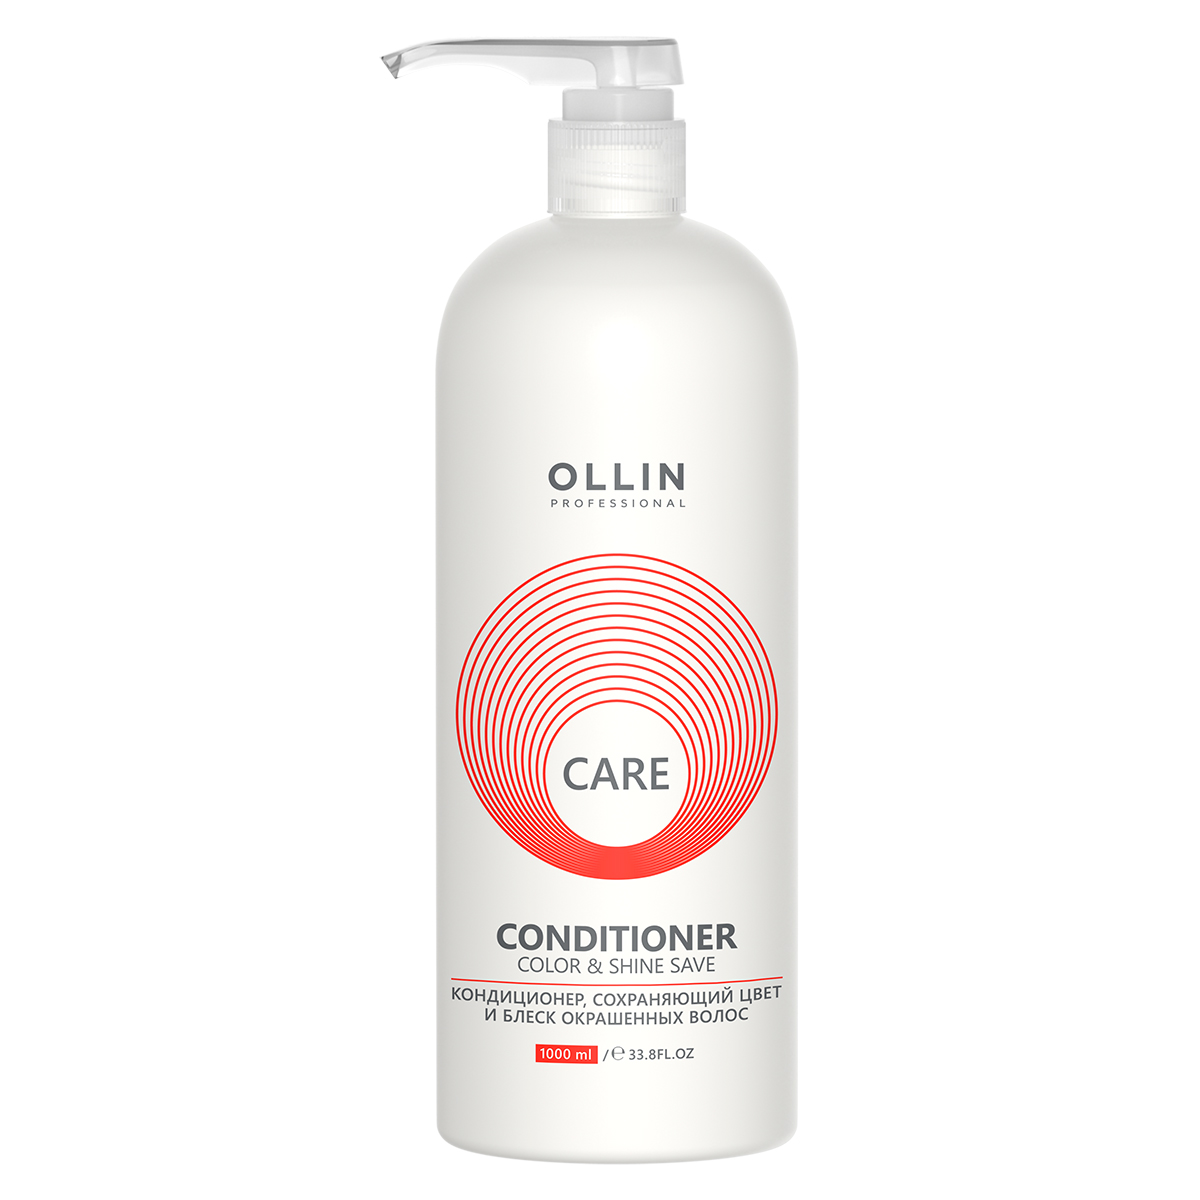 Care Кондиционер, сохраняющий цвет и блеск окрашенных волос, 1000 мл, OLLIN - фото 1